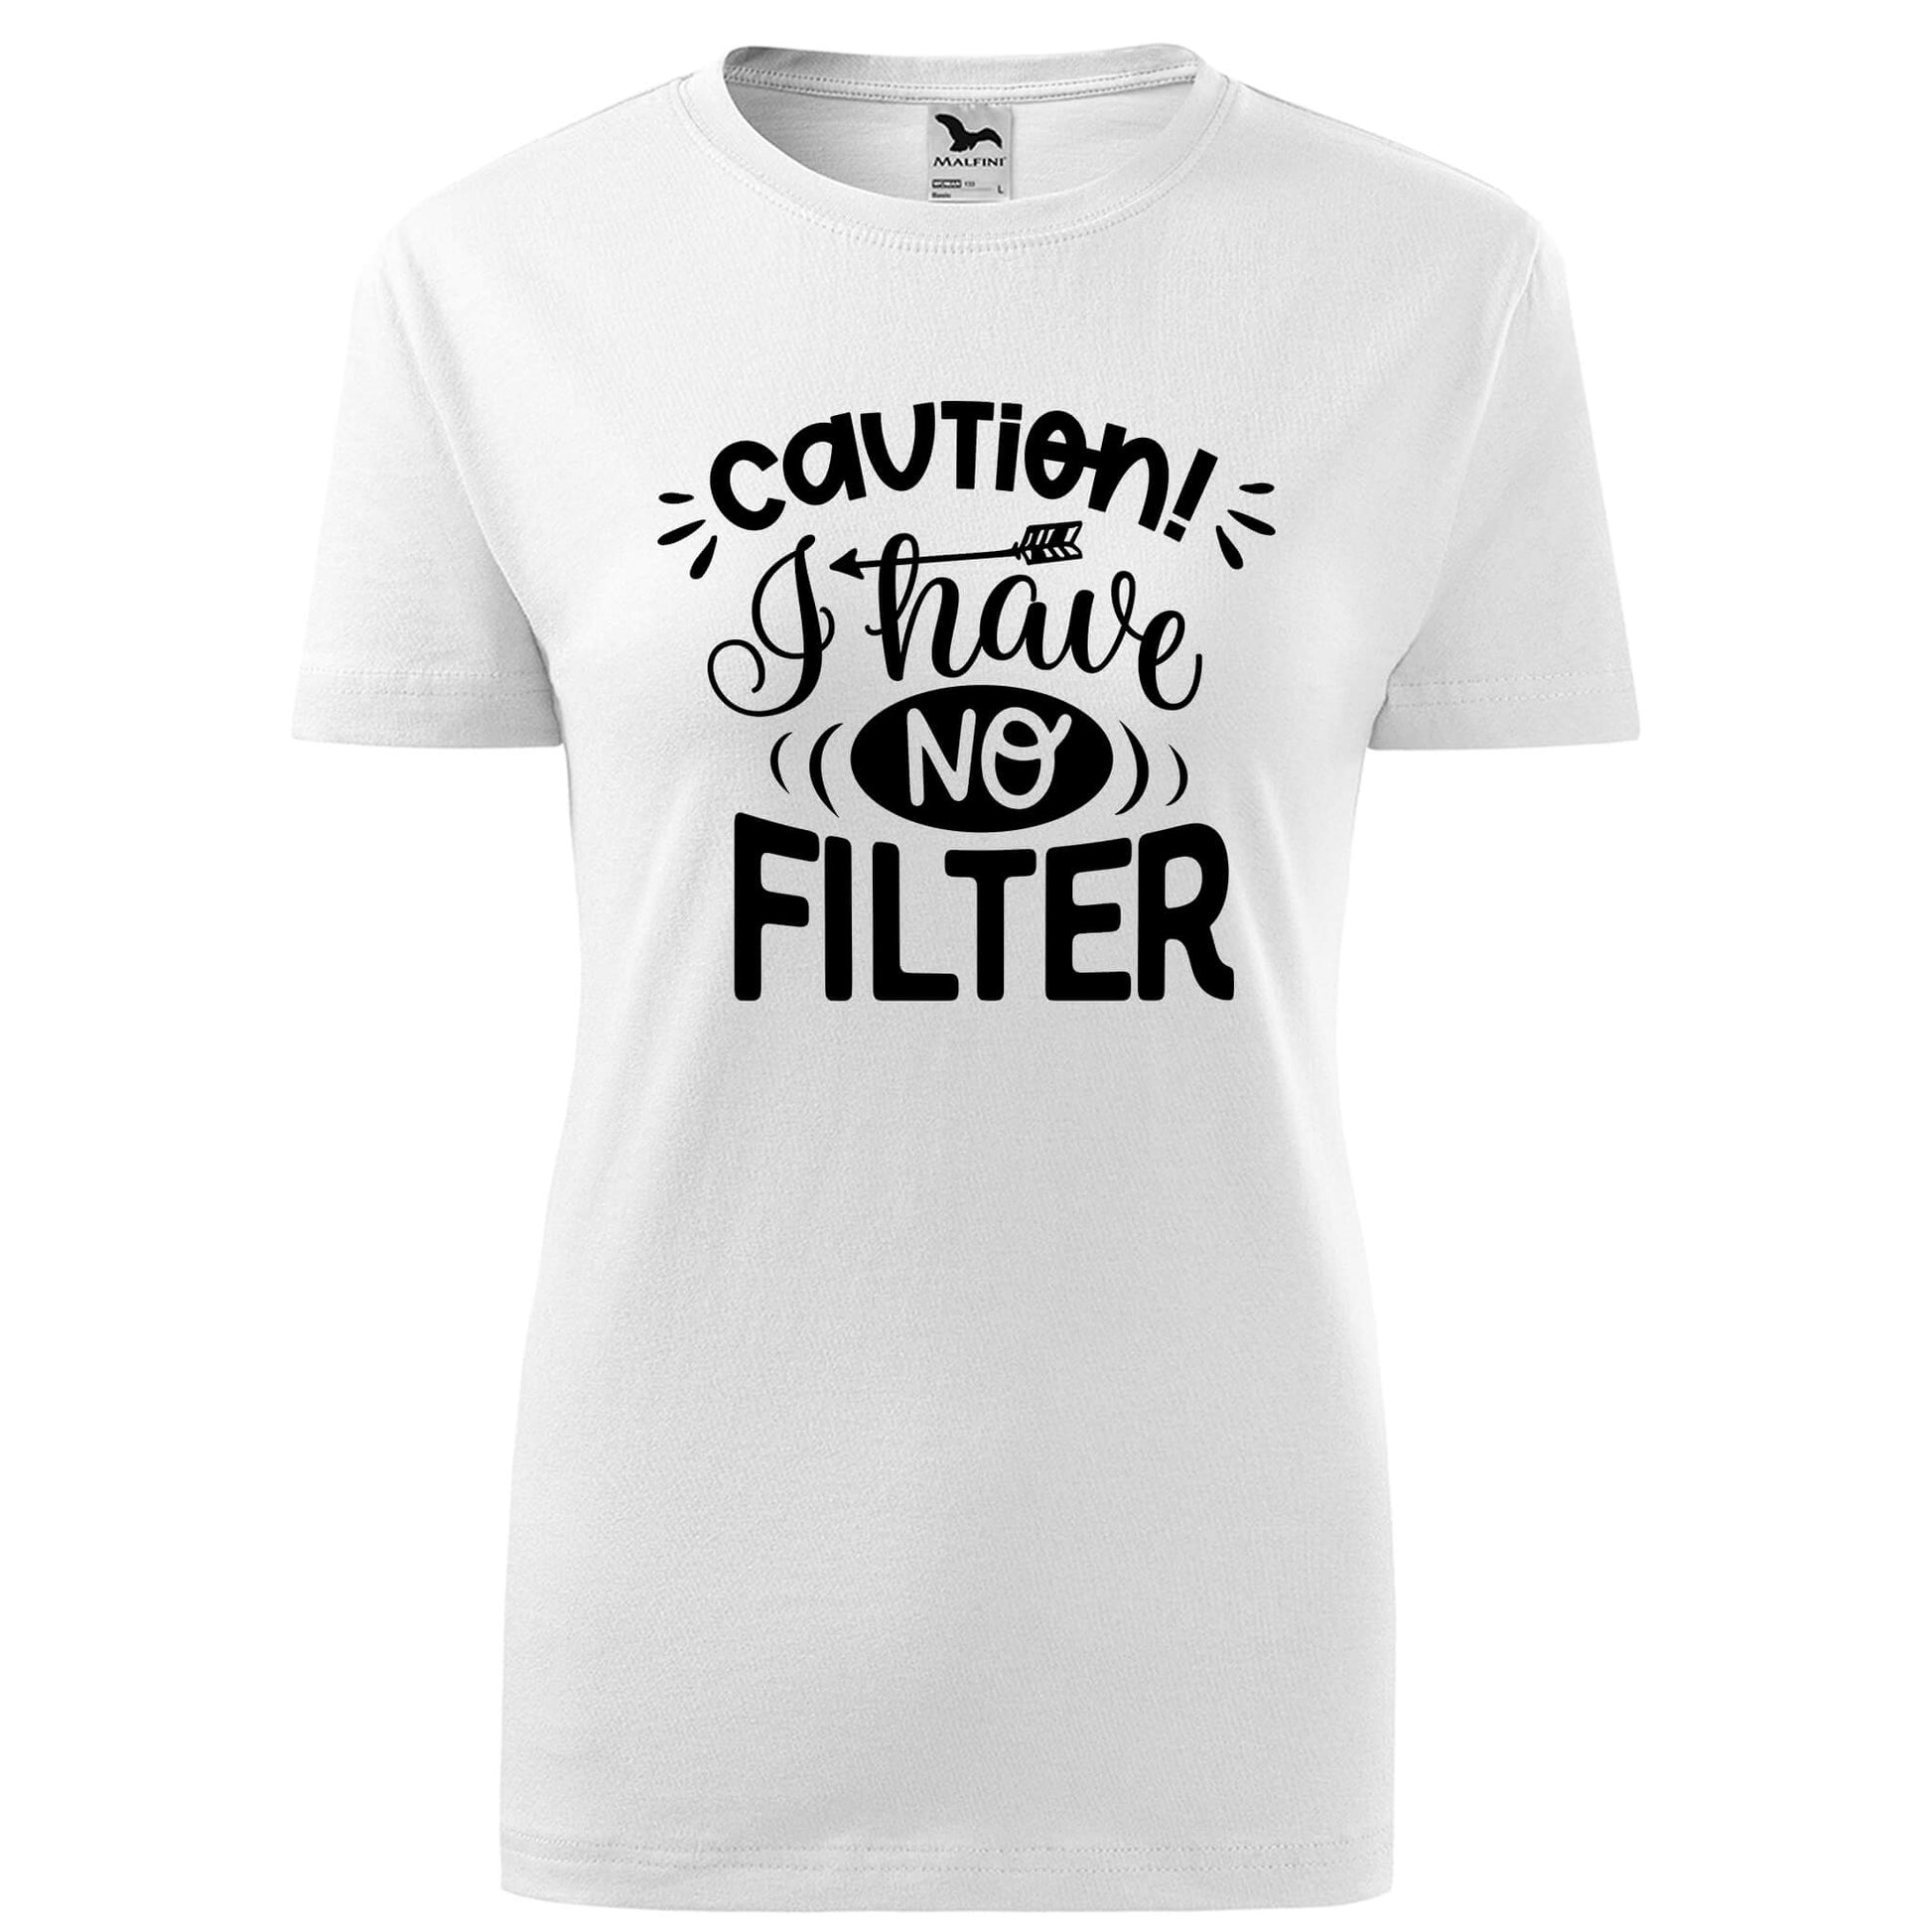 Caution no filter t-shirt - rvdesignprint